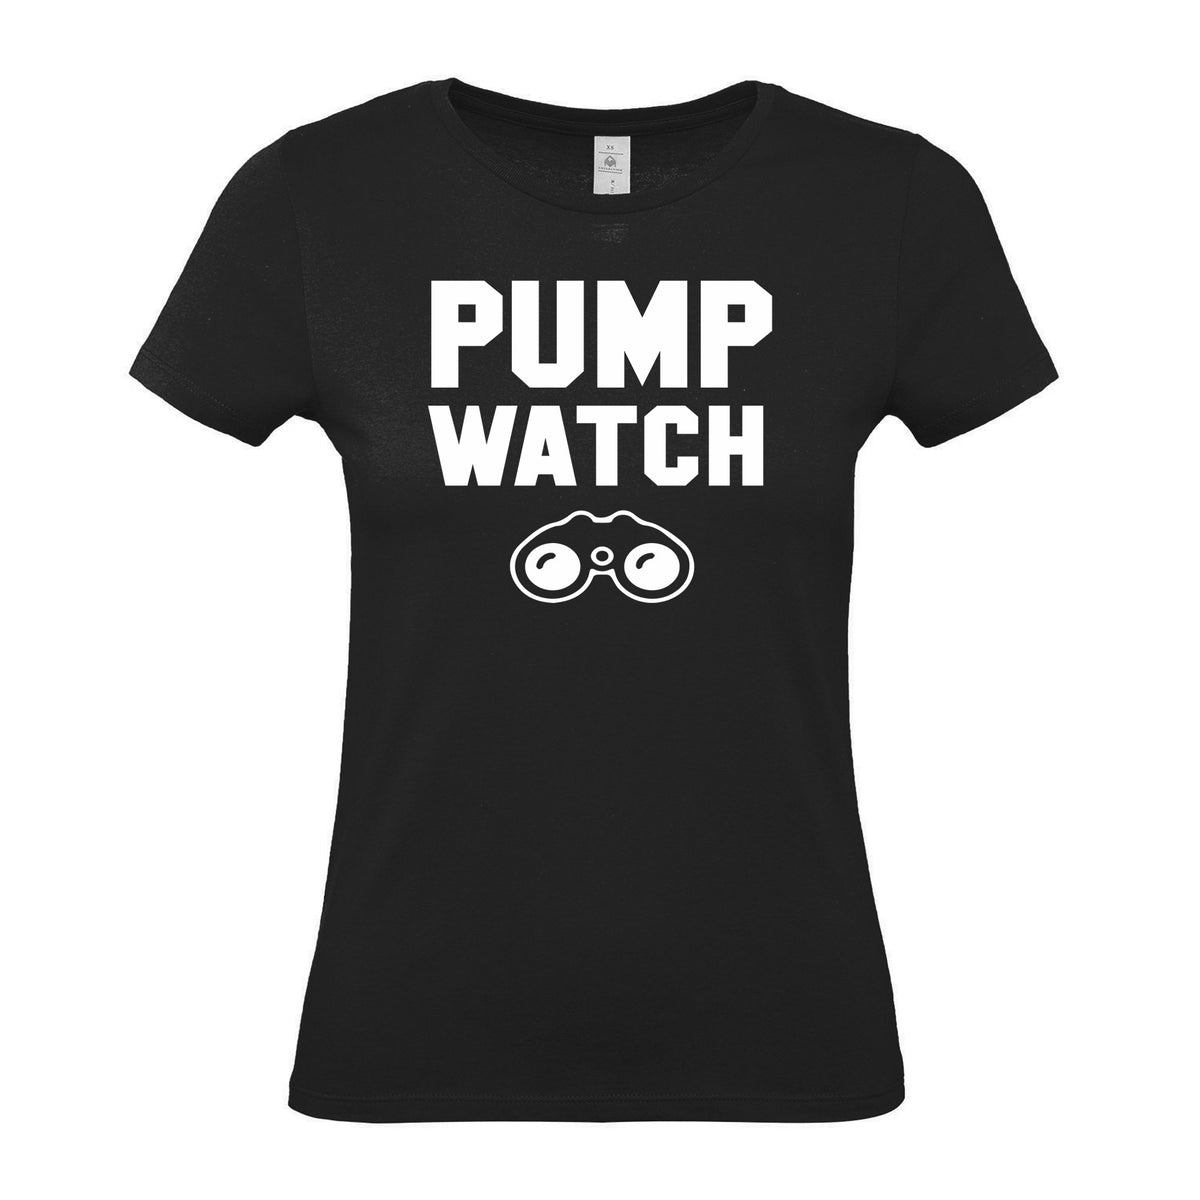 Pump Watch - Women's Gym T-Shirt